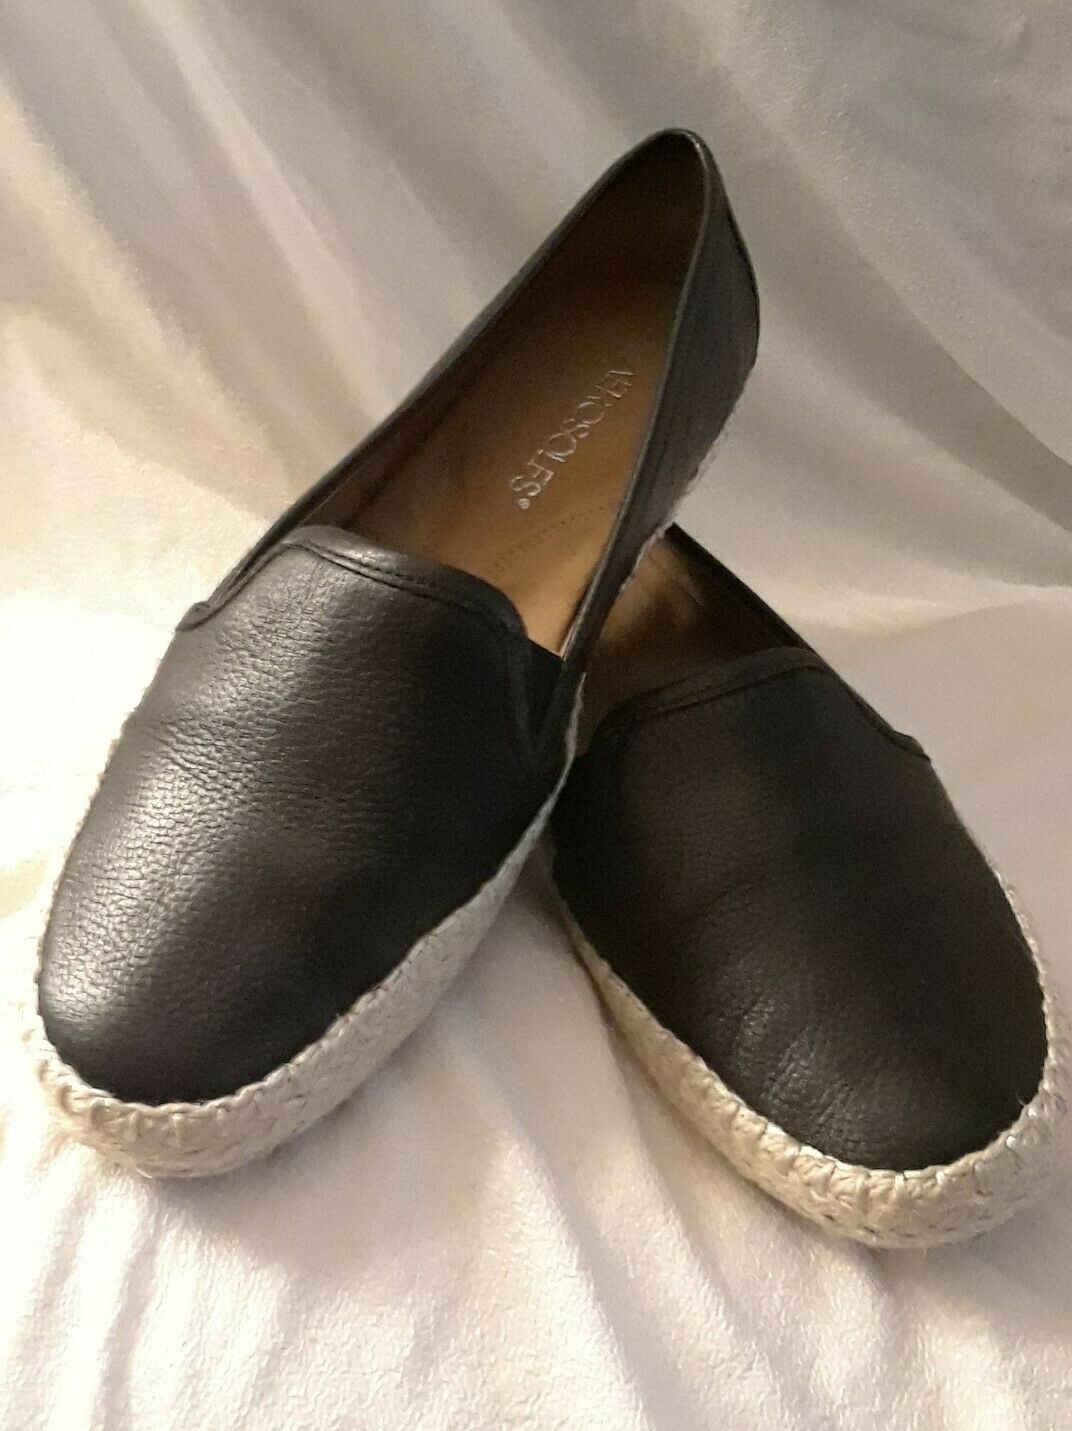 Aerosoles Women's Casual Shoes - Black - Size 7.5 M